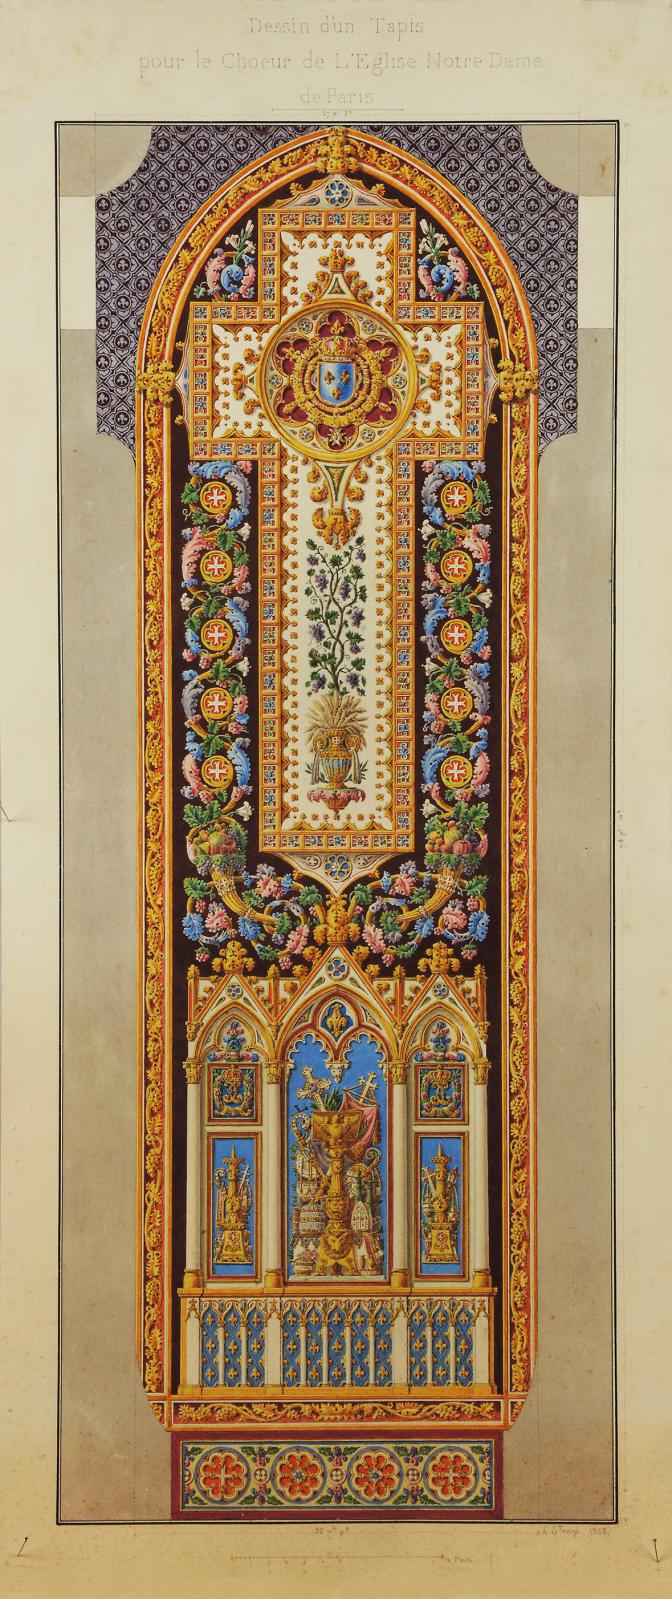 Jacques-Louis de La Hamayde de Saint-Ange (1780-1860), Projet de tapis pour Notre-Dame de Paris, archives du Mobilier national.© Isabelle 